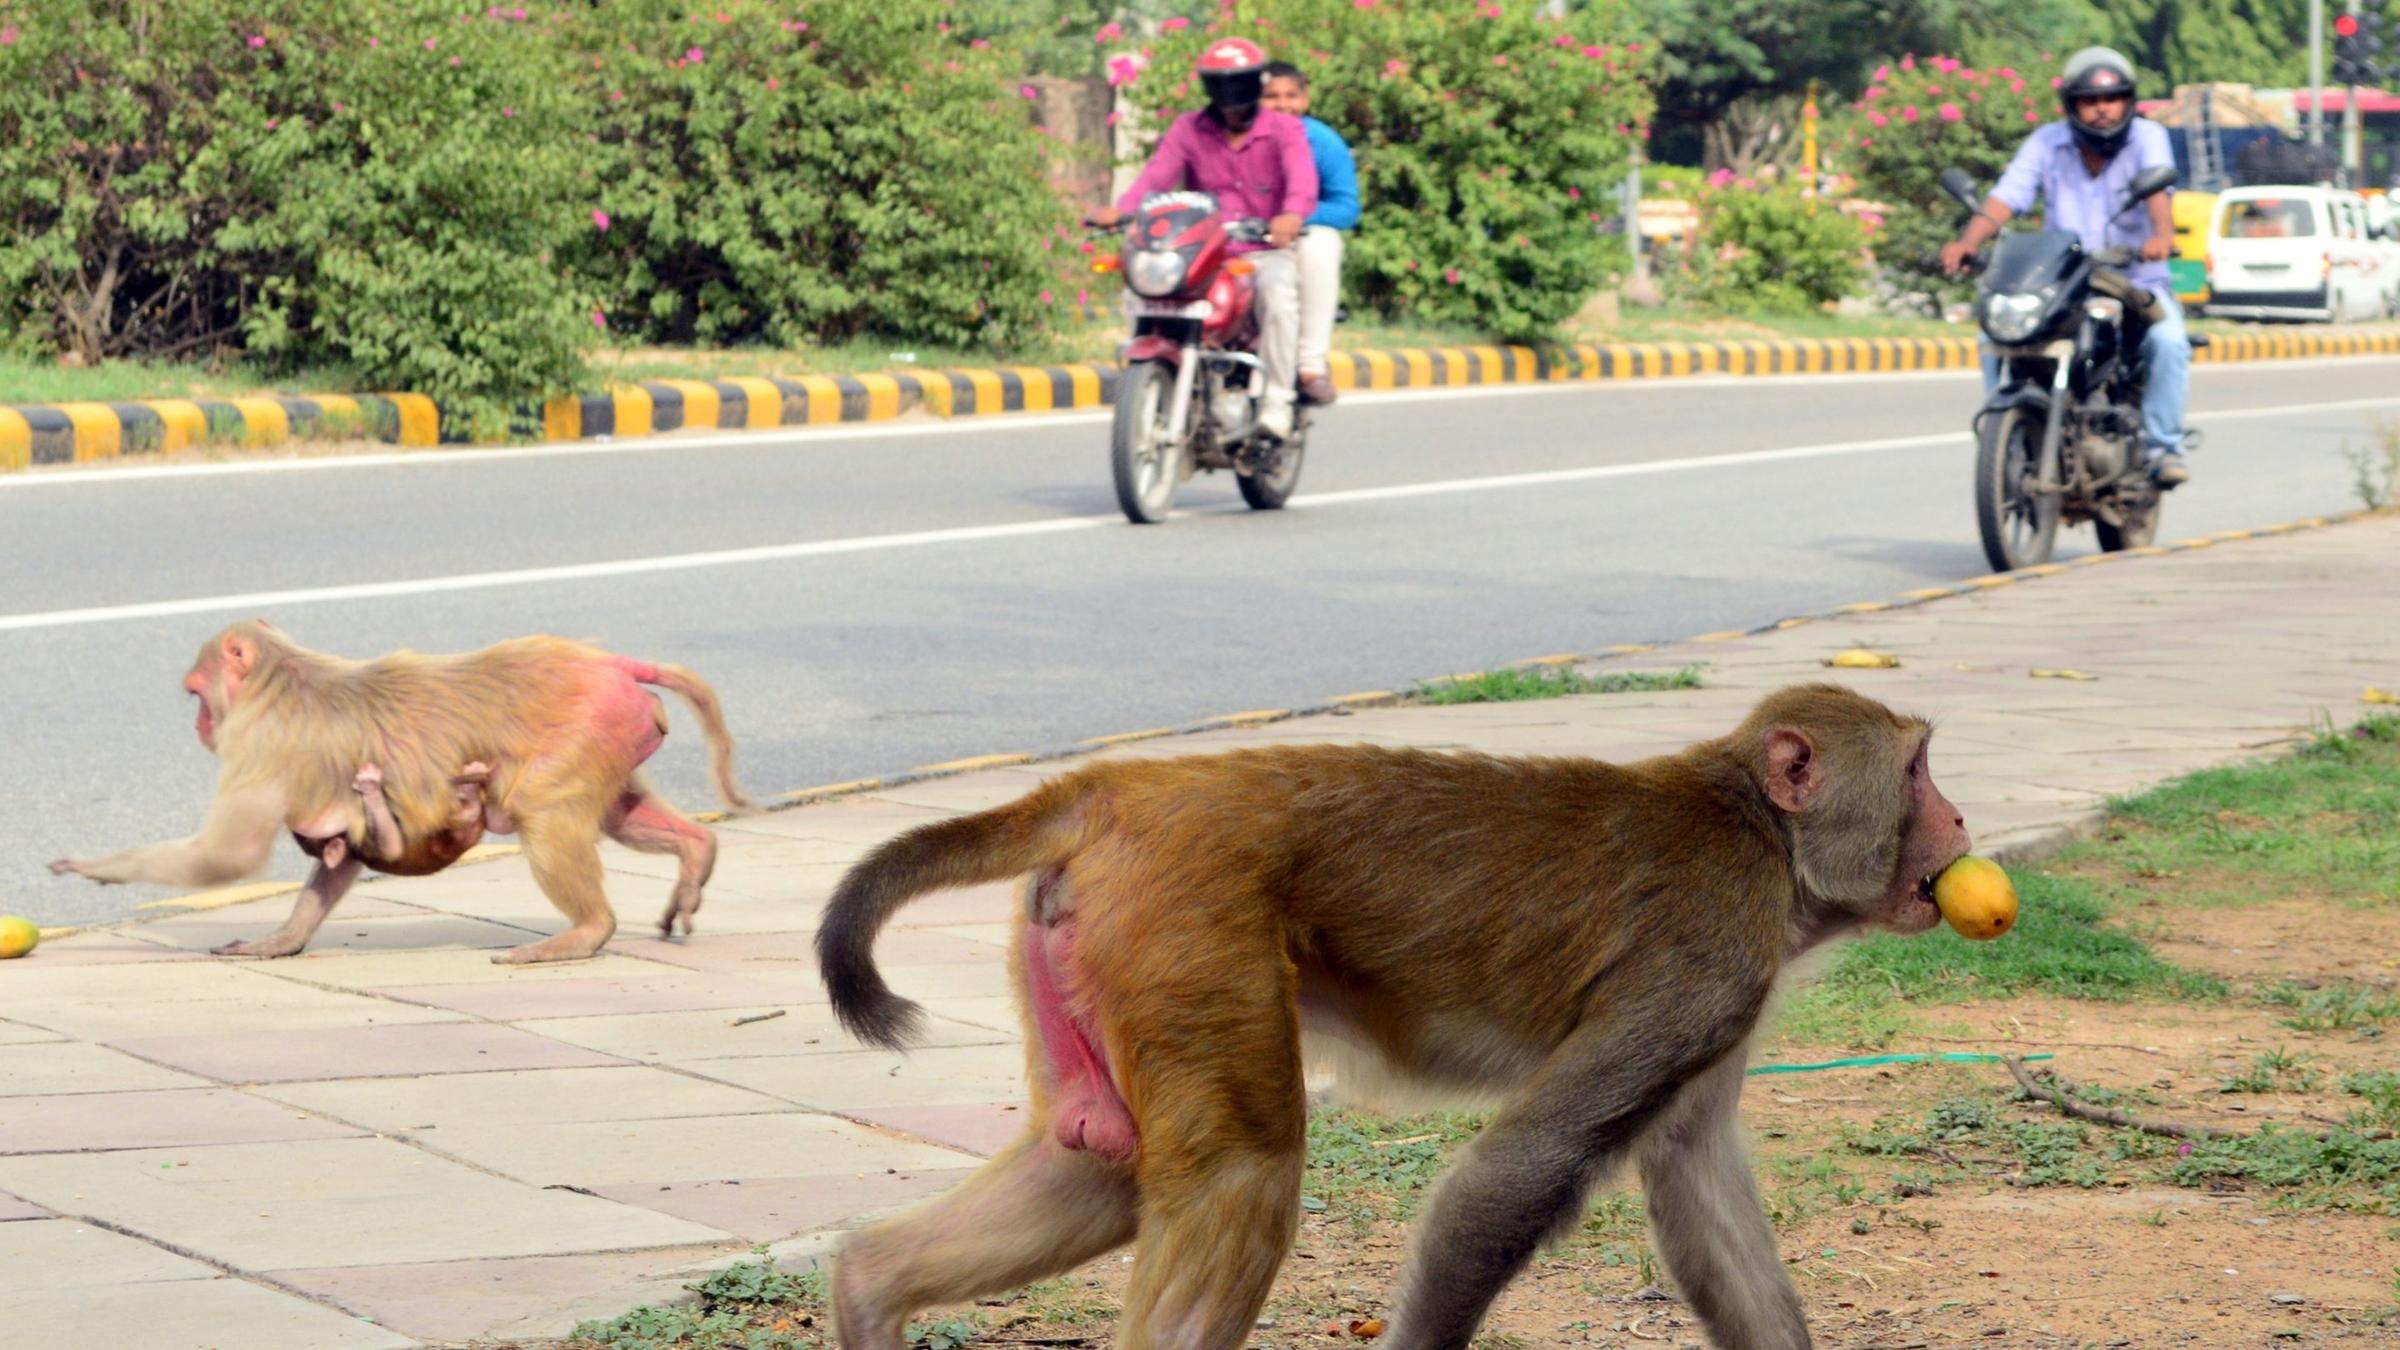 Affenplage auf den Straßen Neu Delhis (Archiv)